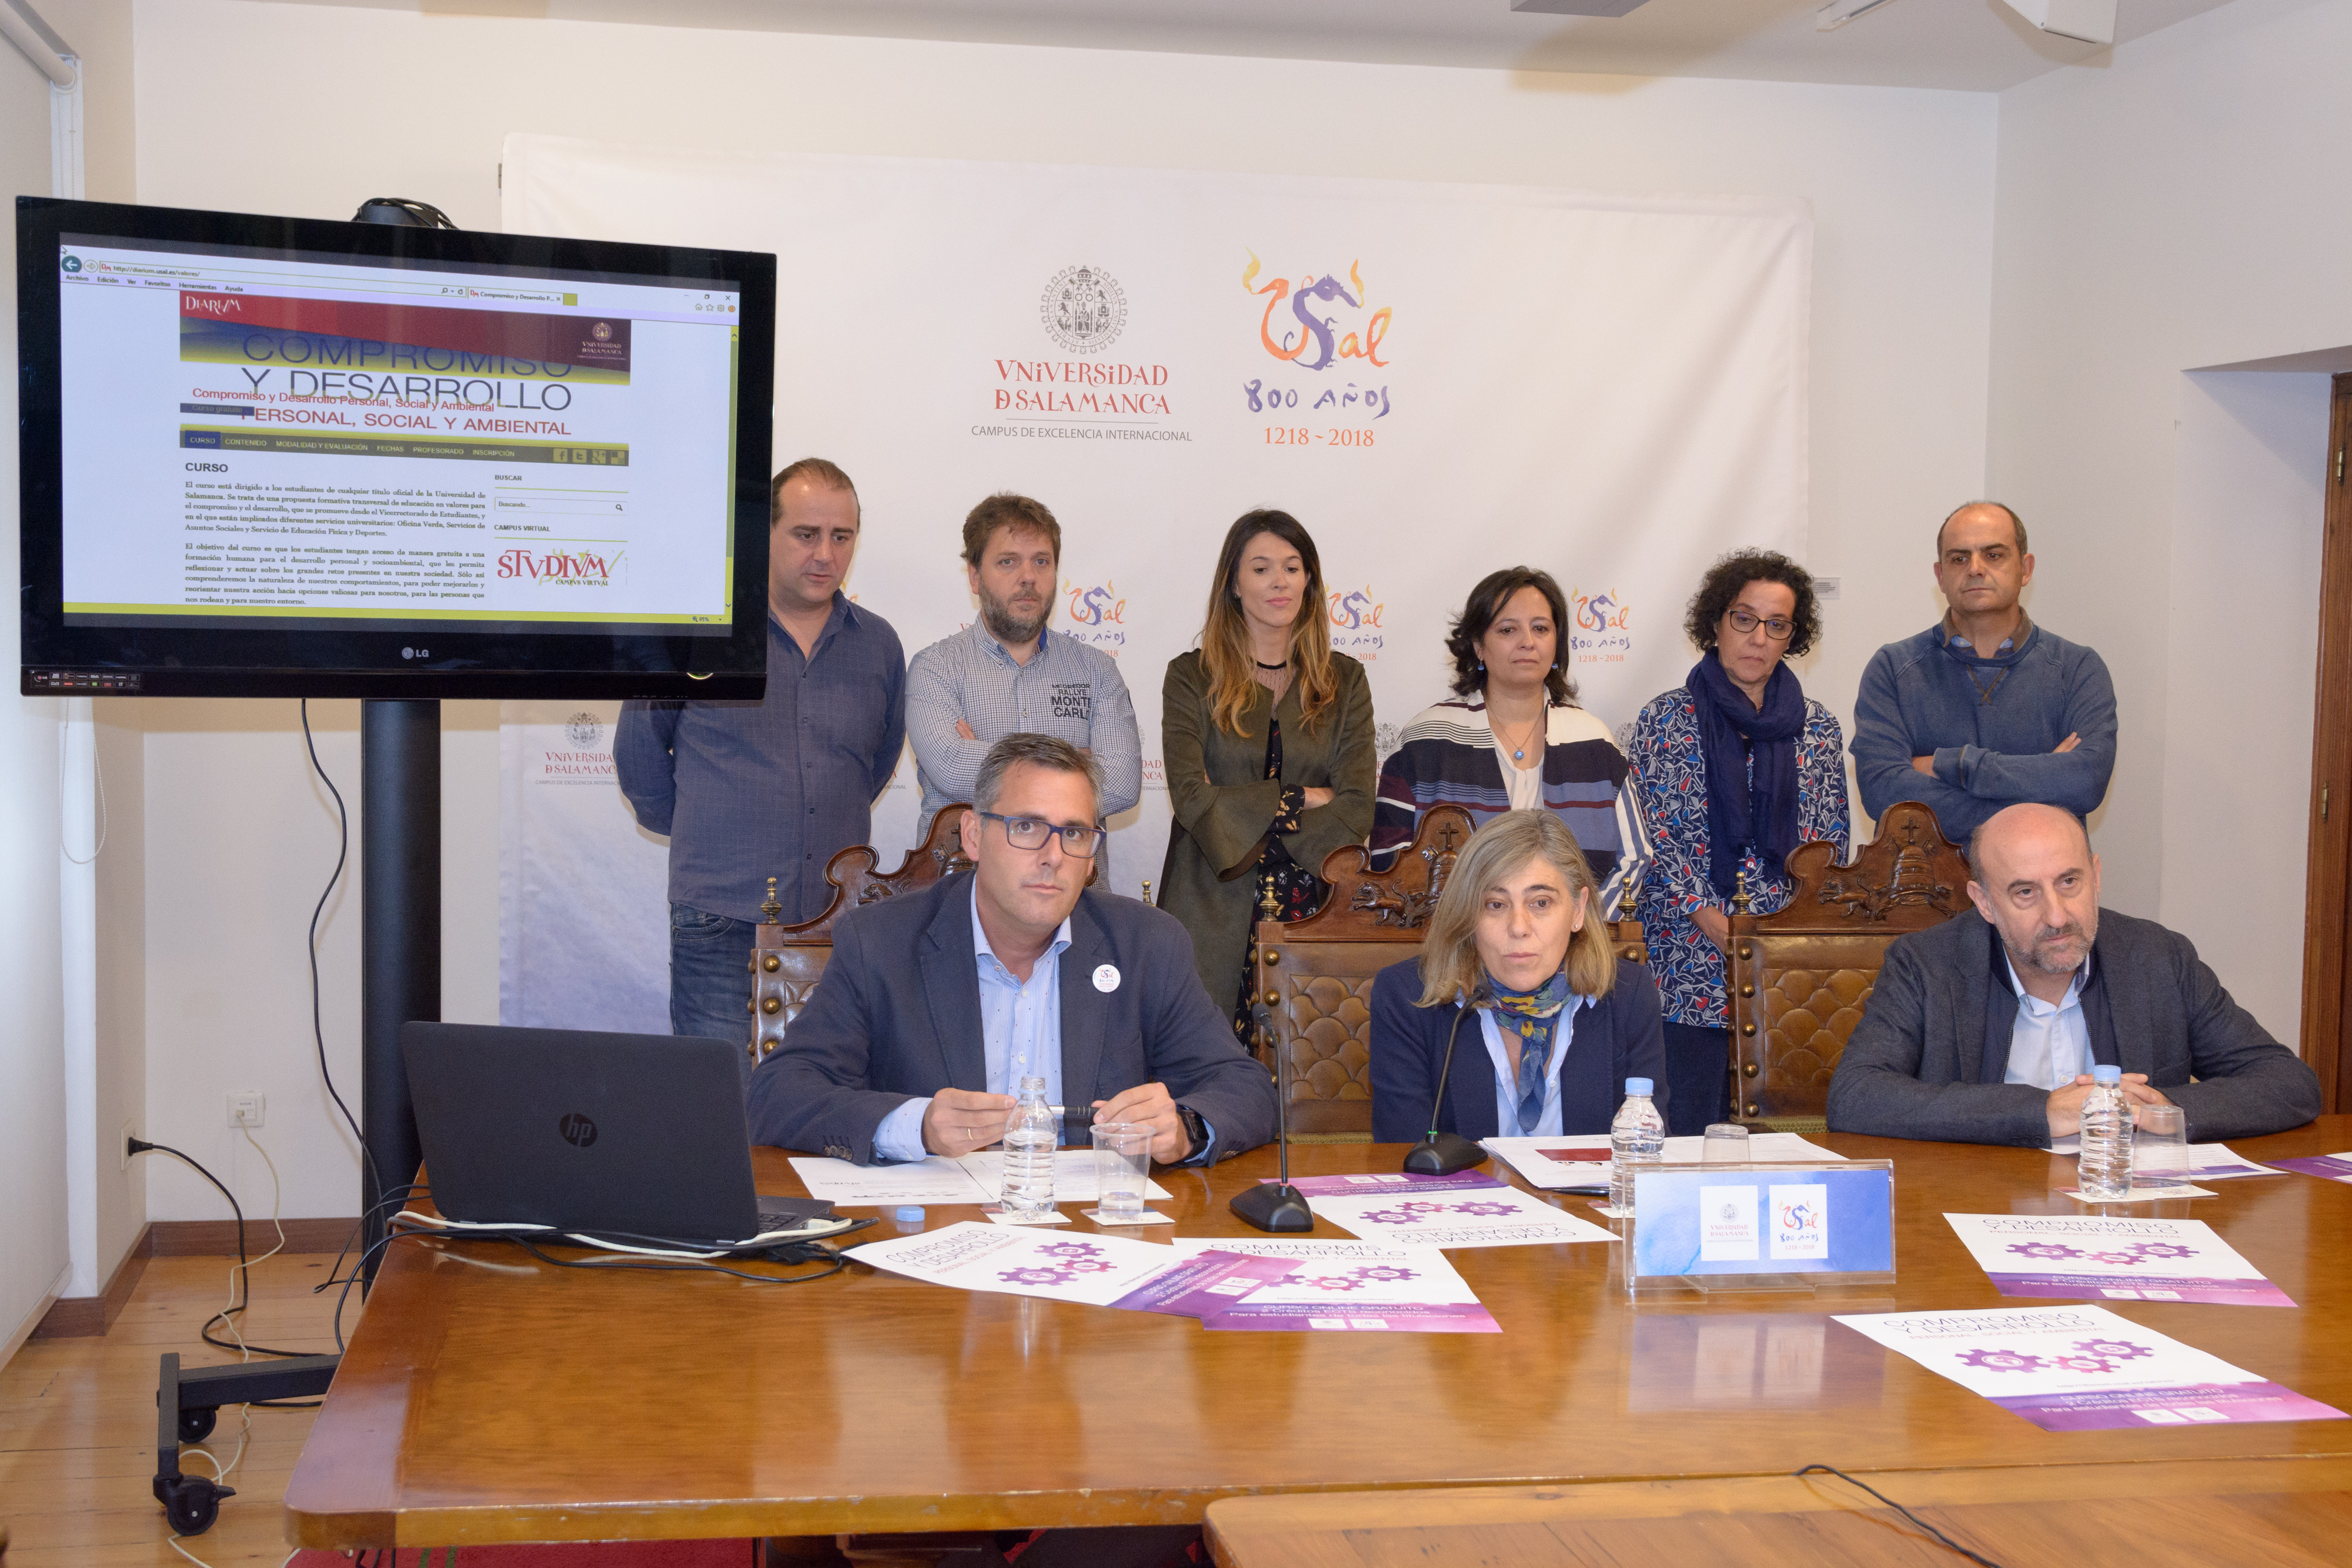 La Universidad de Salamanca promueve el desarrollo personal y social entre sus estudiantes a través de un curso virtual gratuito